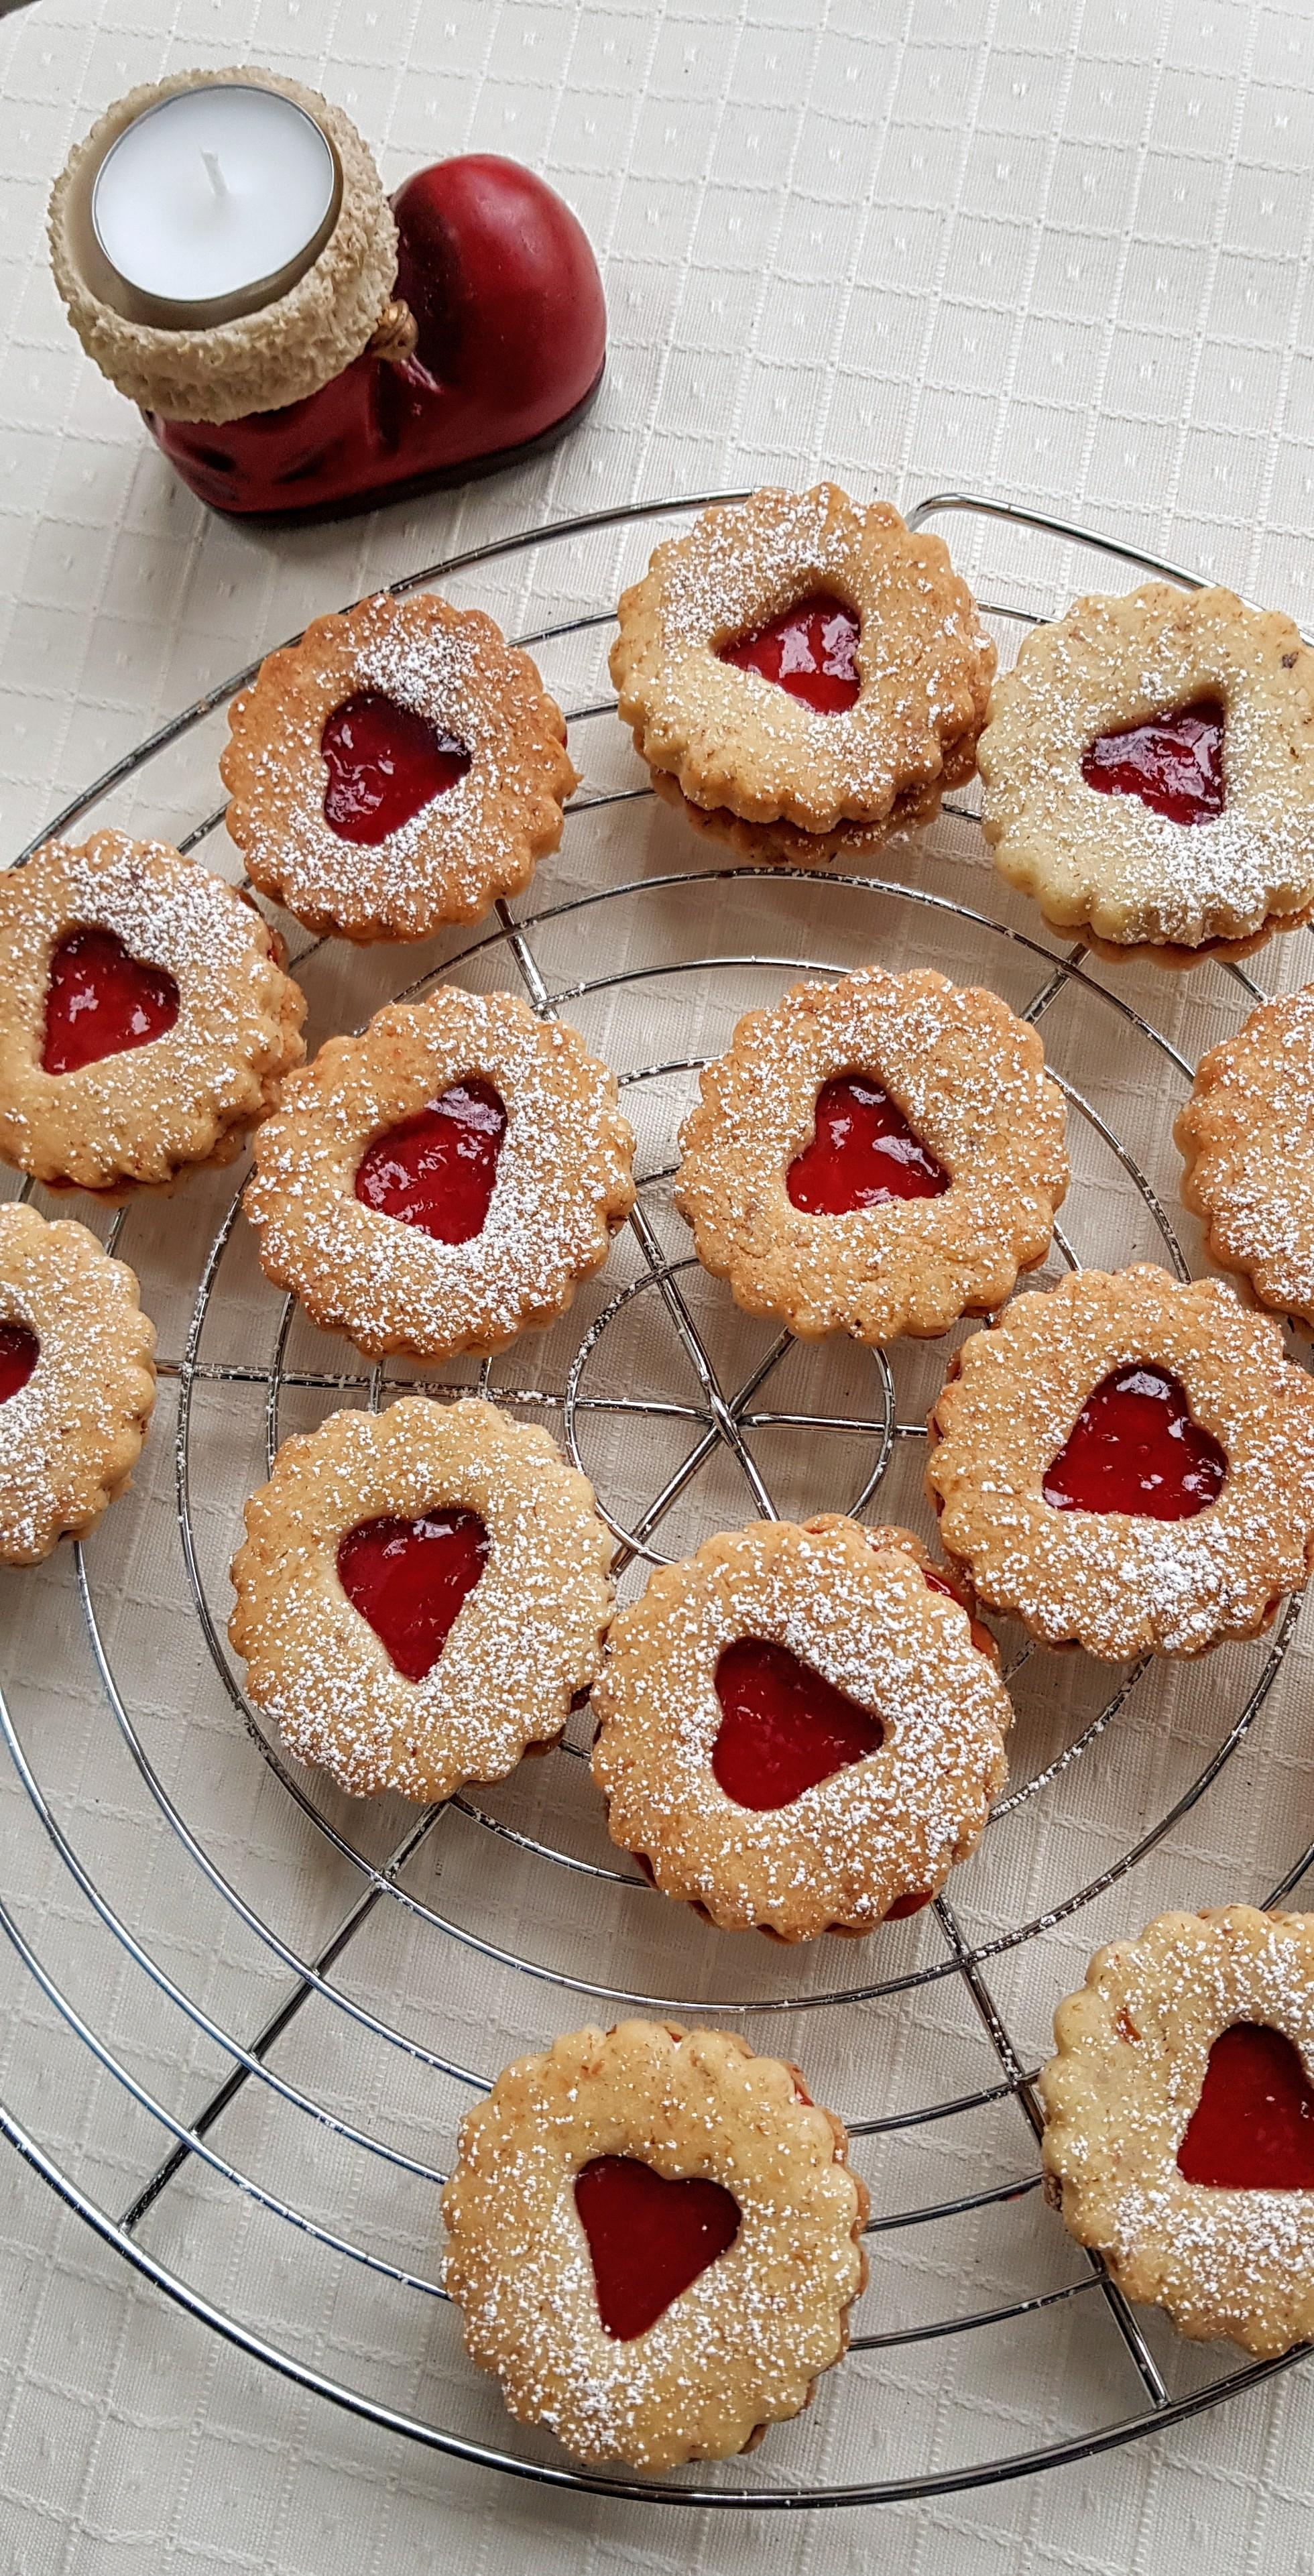 Kekse, Kekse, Kekse: Zur Weihnachtszeit gibt es bei mir nichts anderes! #weihnachtsbäckerei #keksebacken